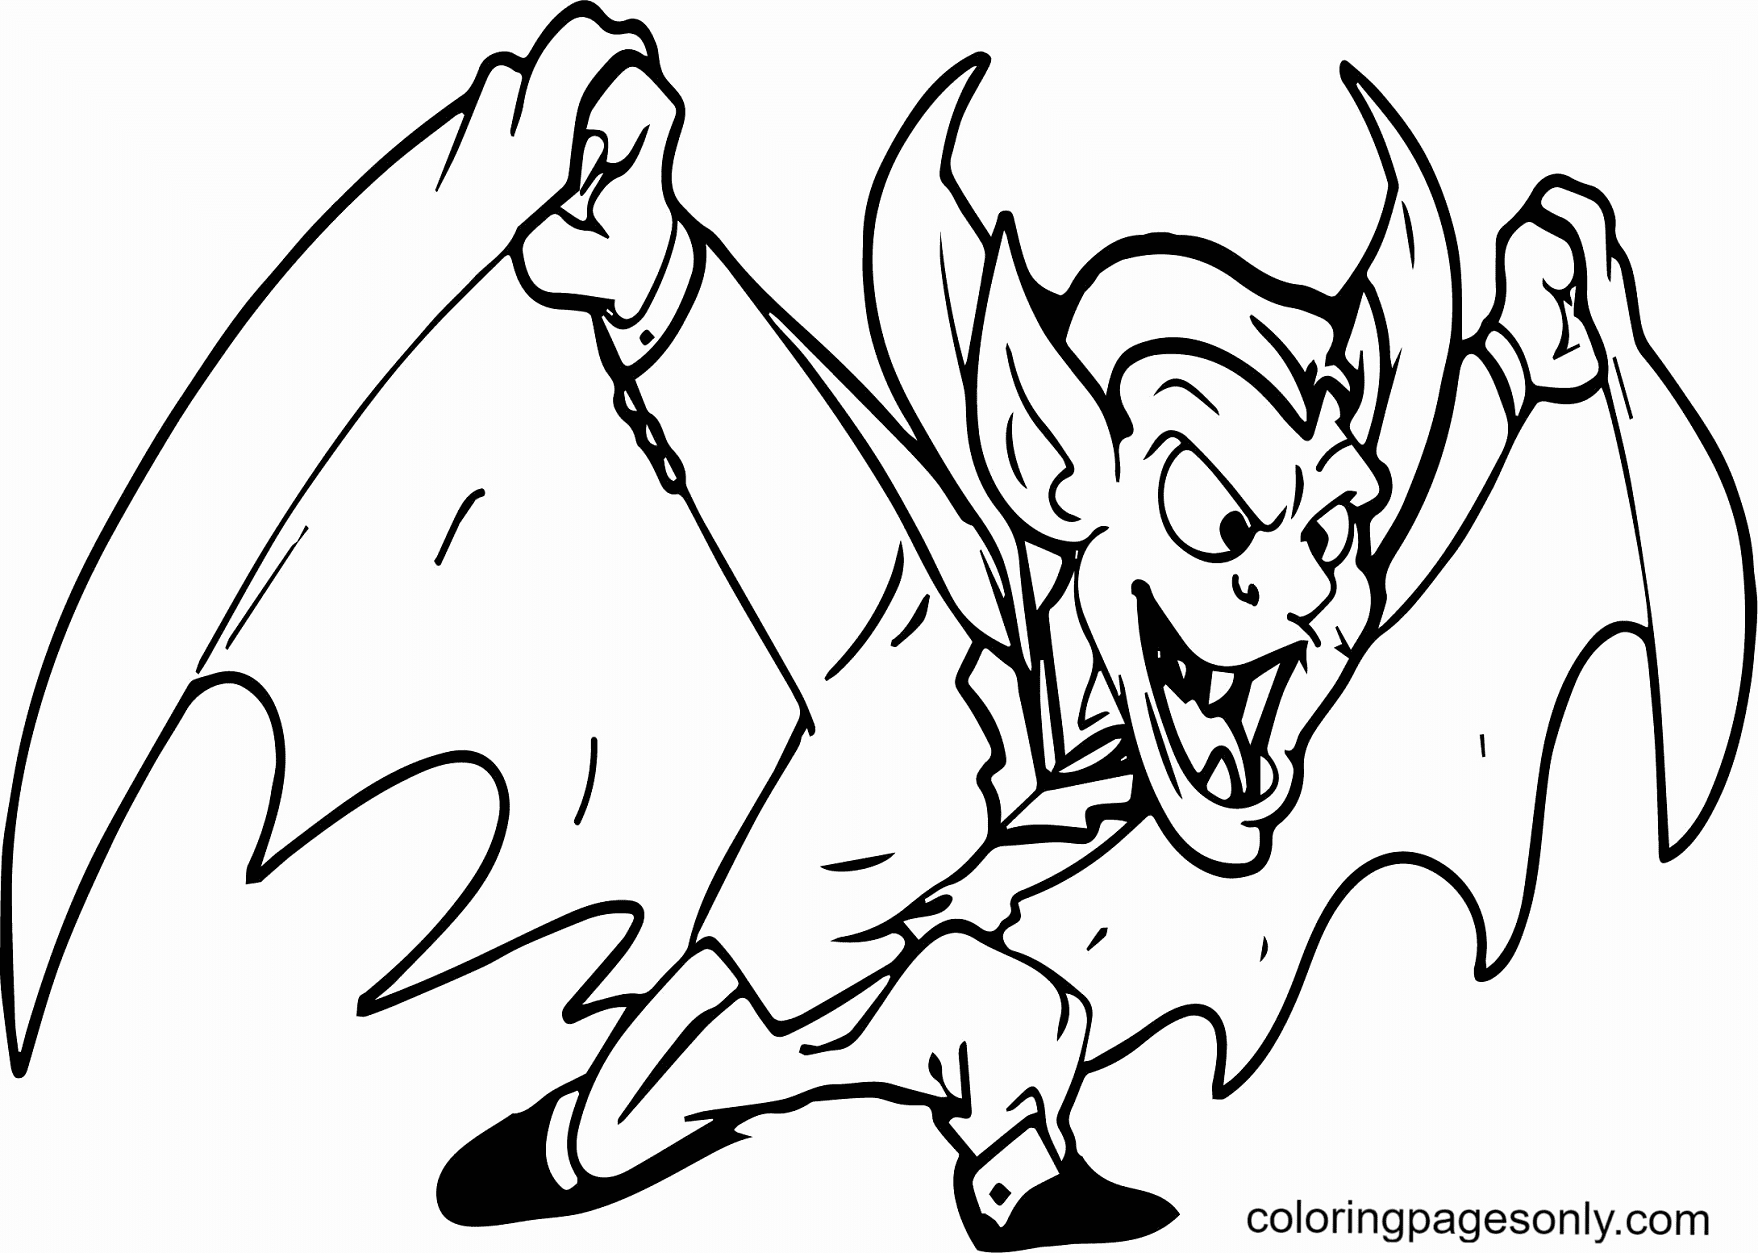 Como Desenhar 10: Como Desenhar Um Vampiro Assustador!